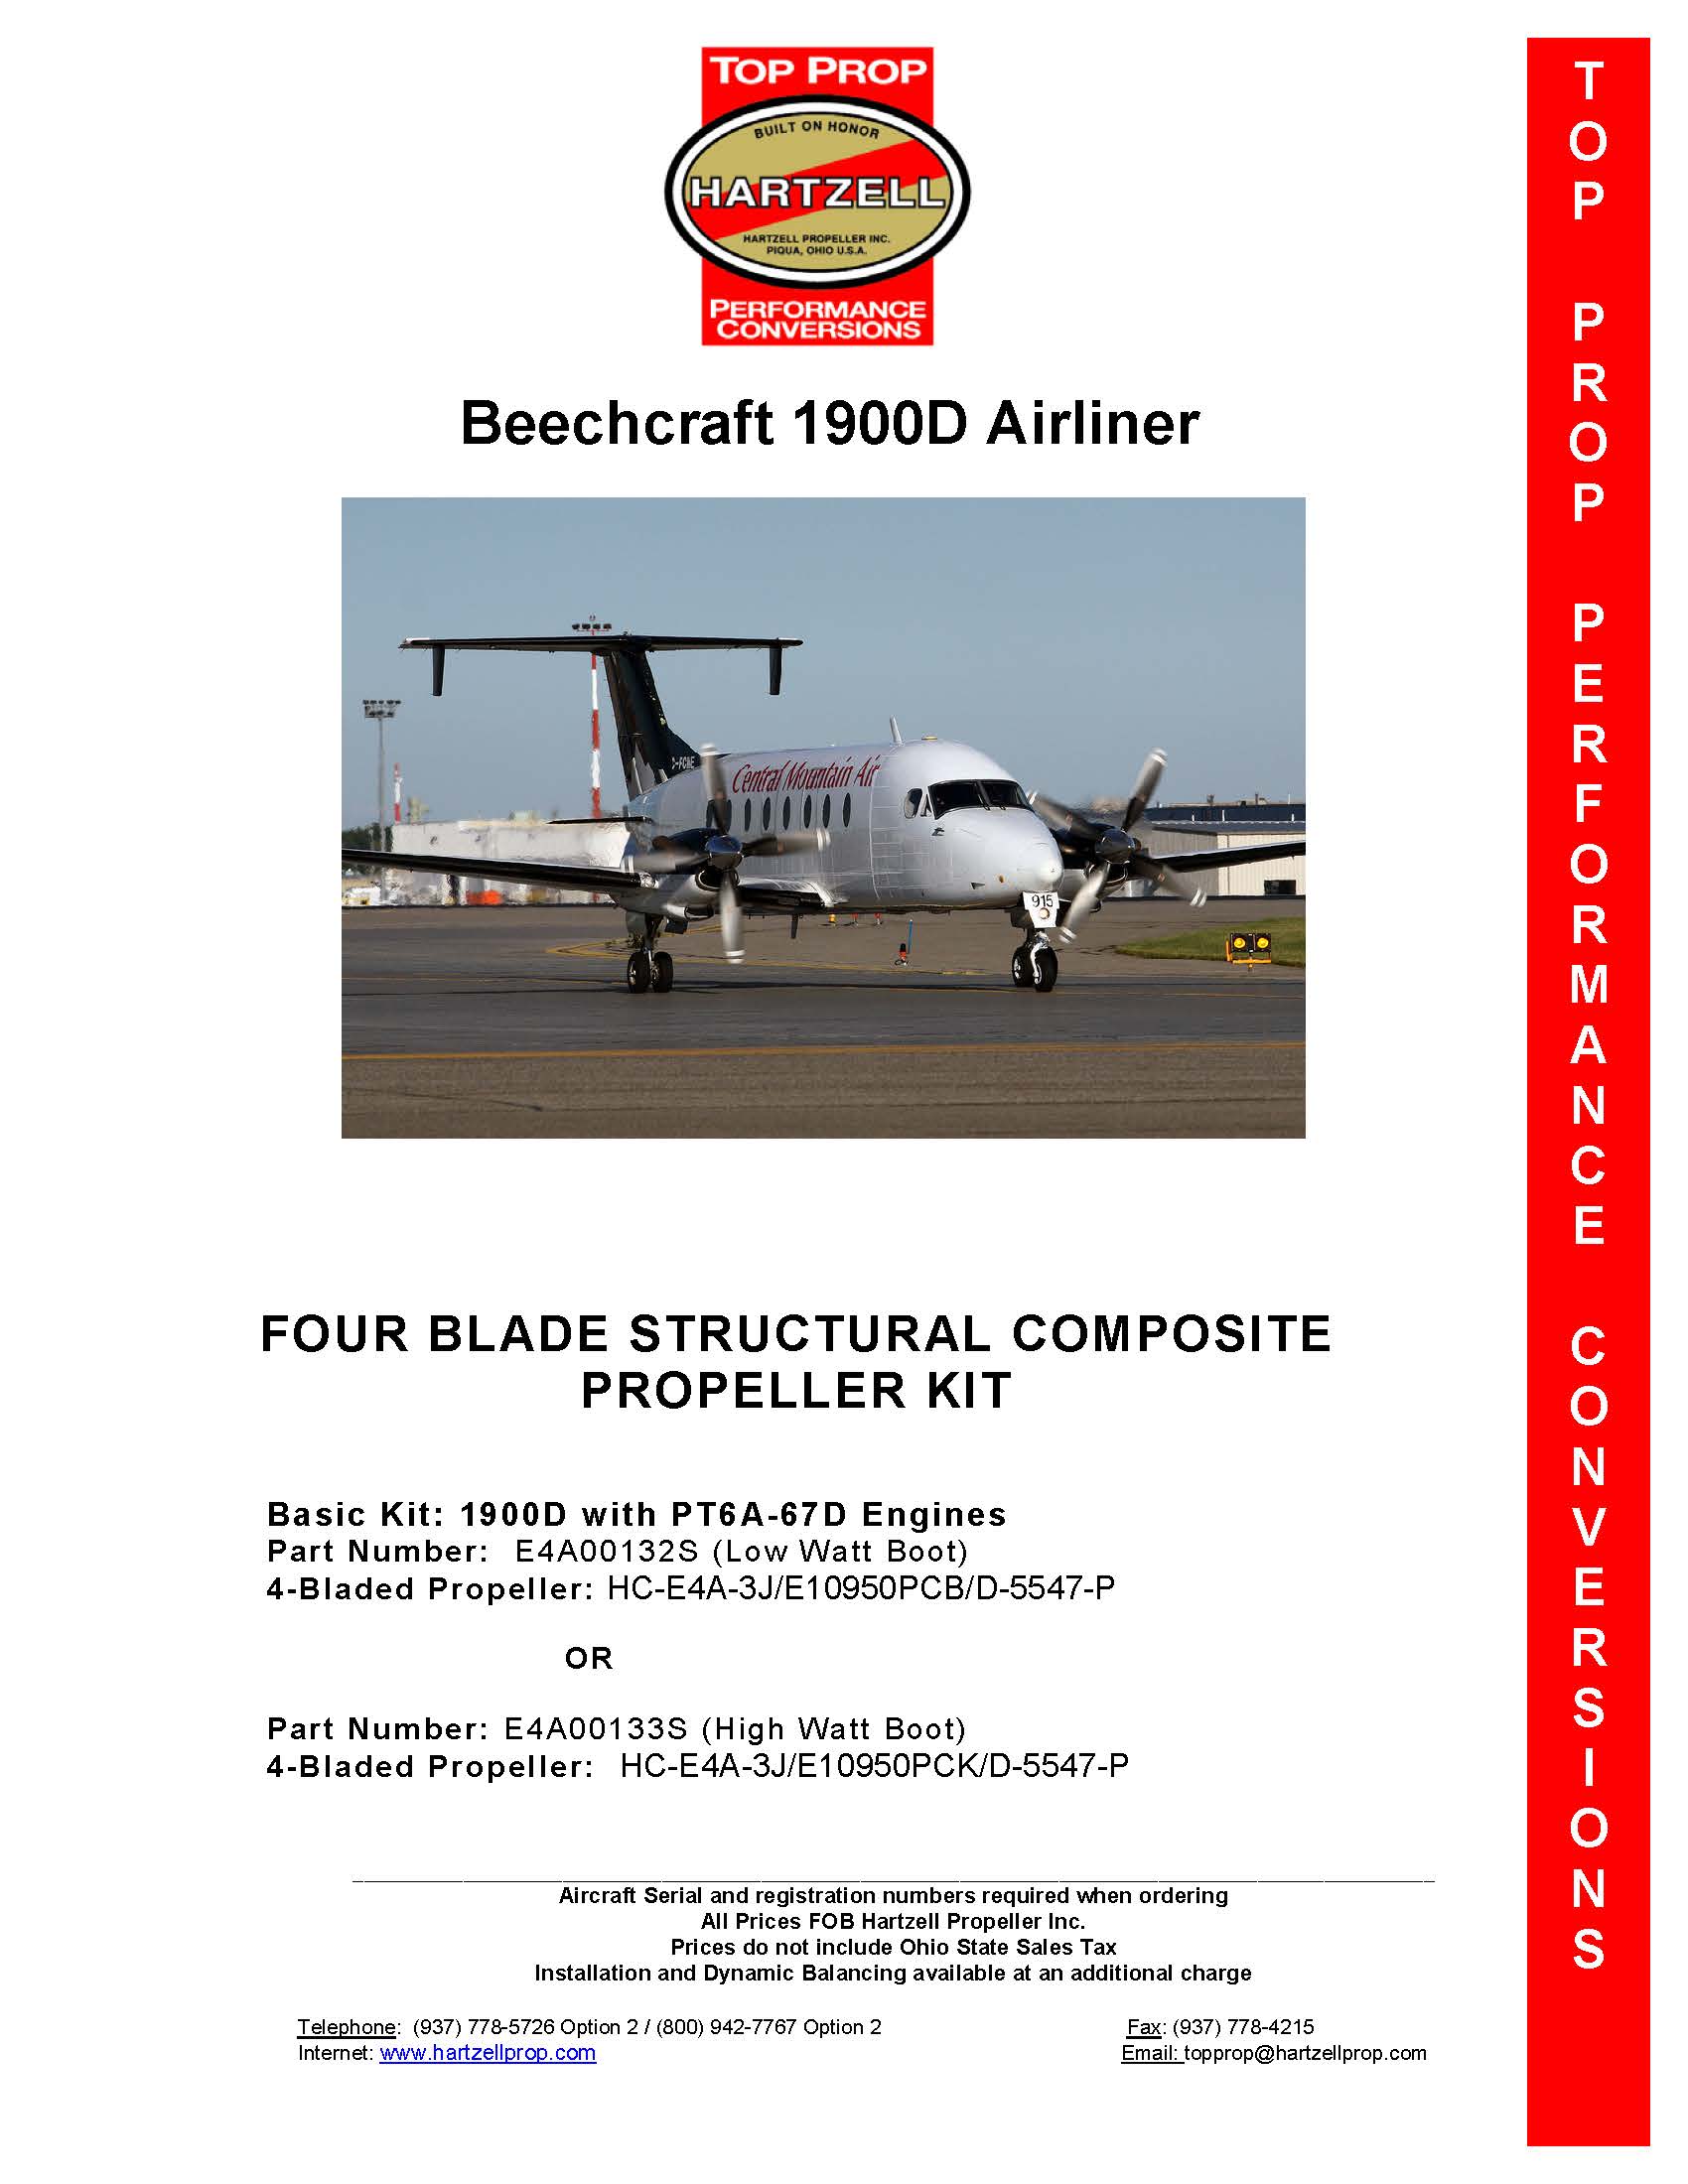 Beechcraft-1900D-LOW-WATT-BOOT-PAGE-1